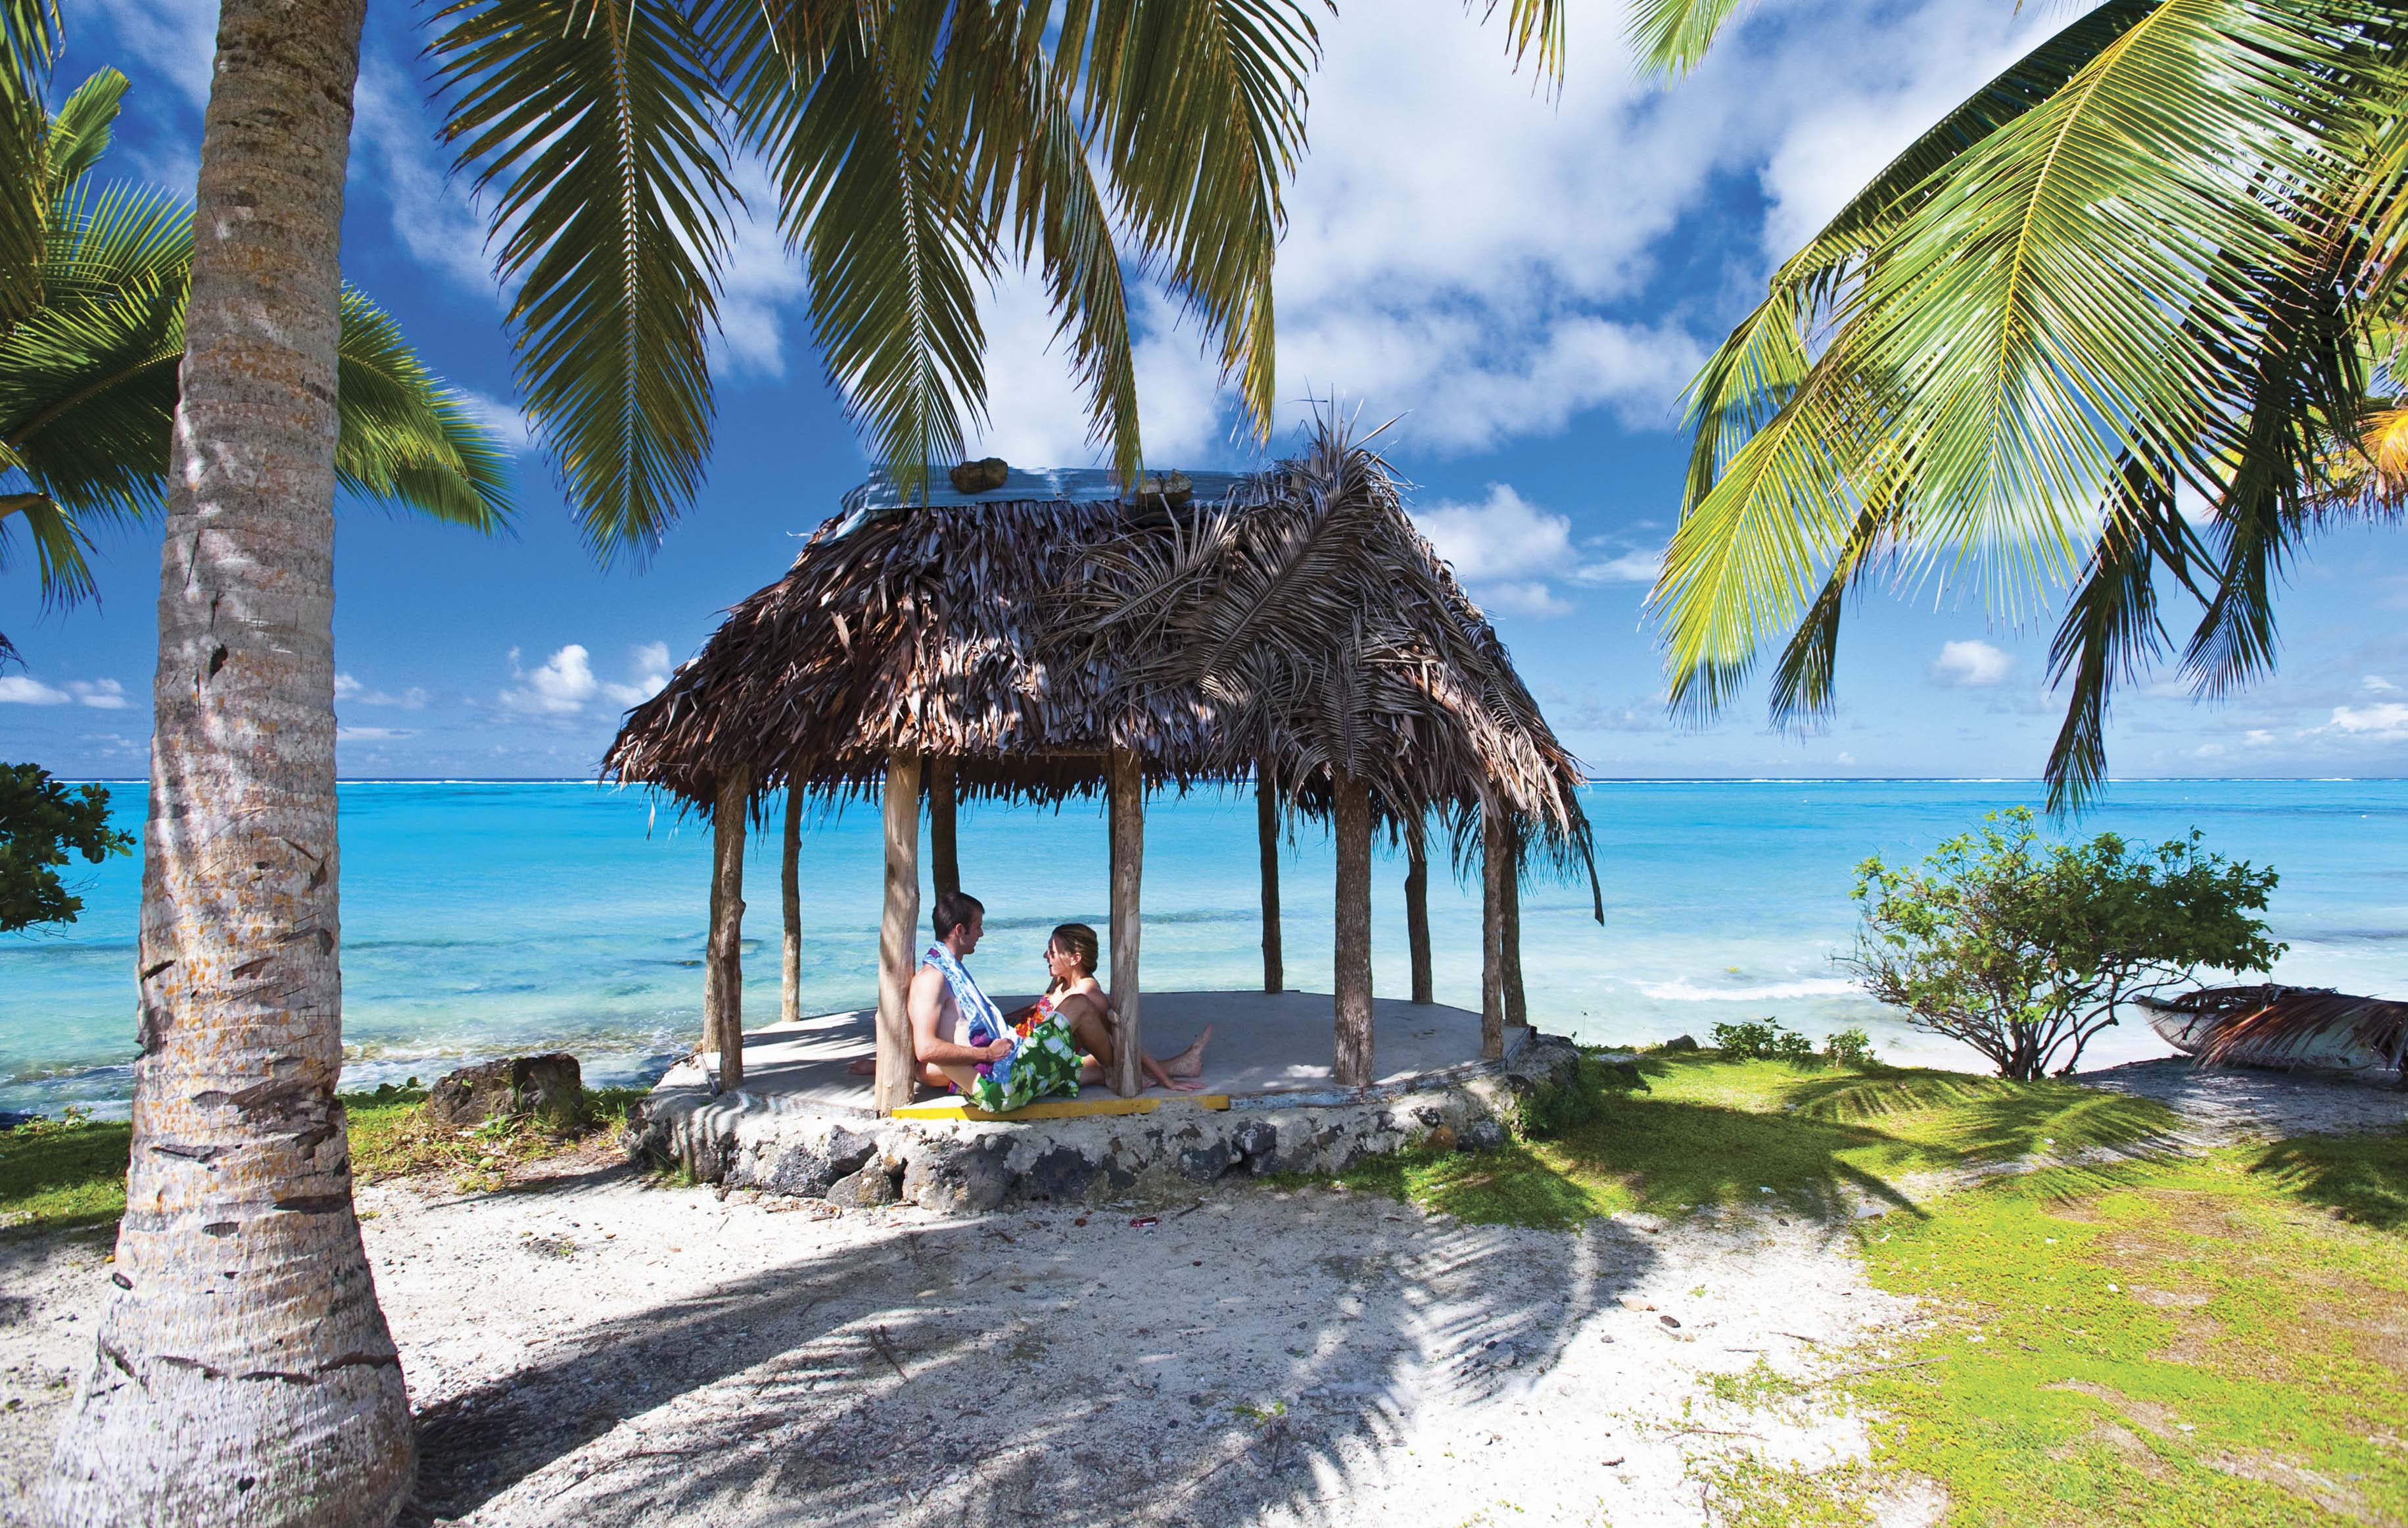 Många turister kommer till Samoa för den natursköna miljön.